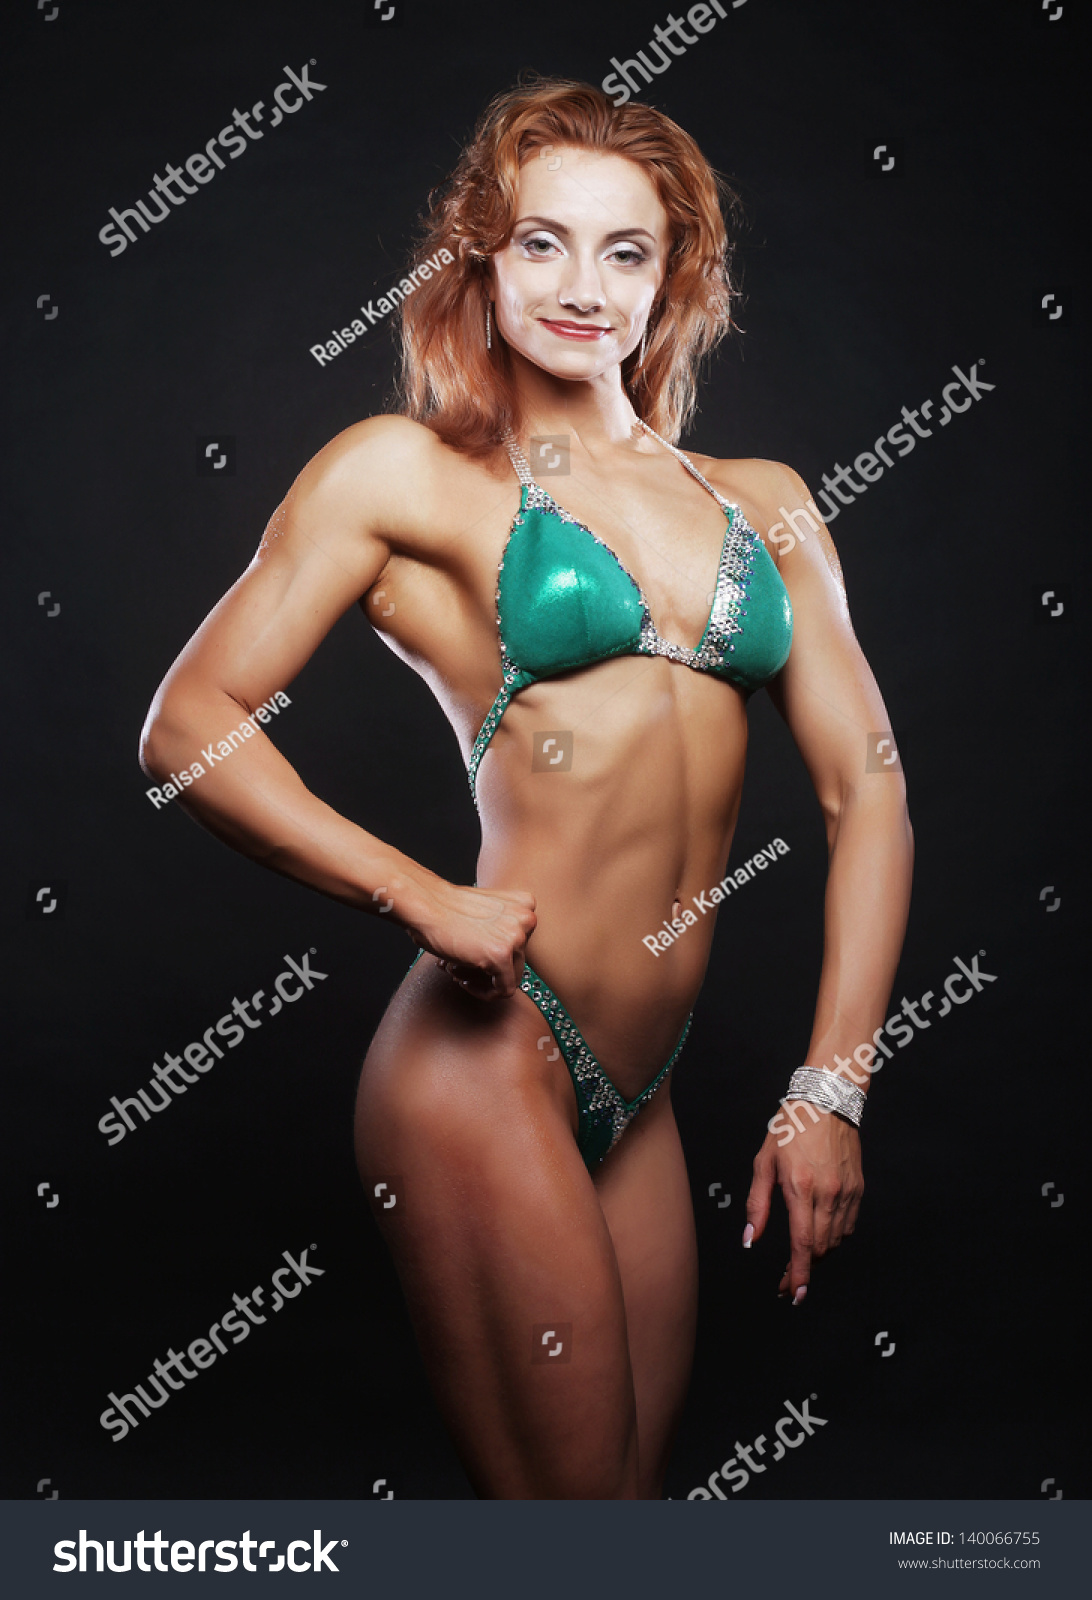 A Beautiful Woman Bodybuilder Posing In Green Bikini Stock Photo Shutterstock